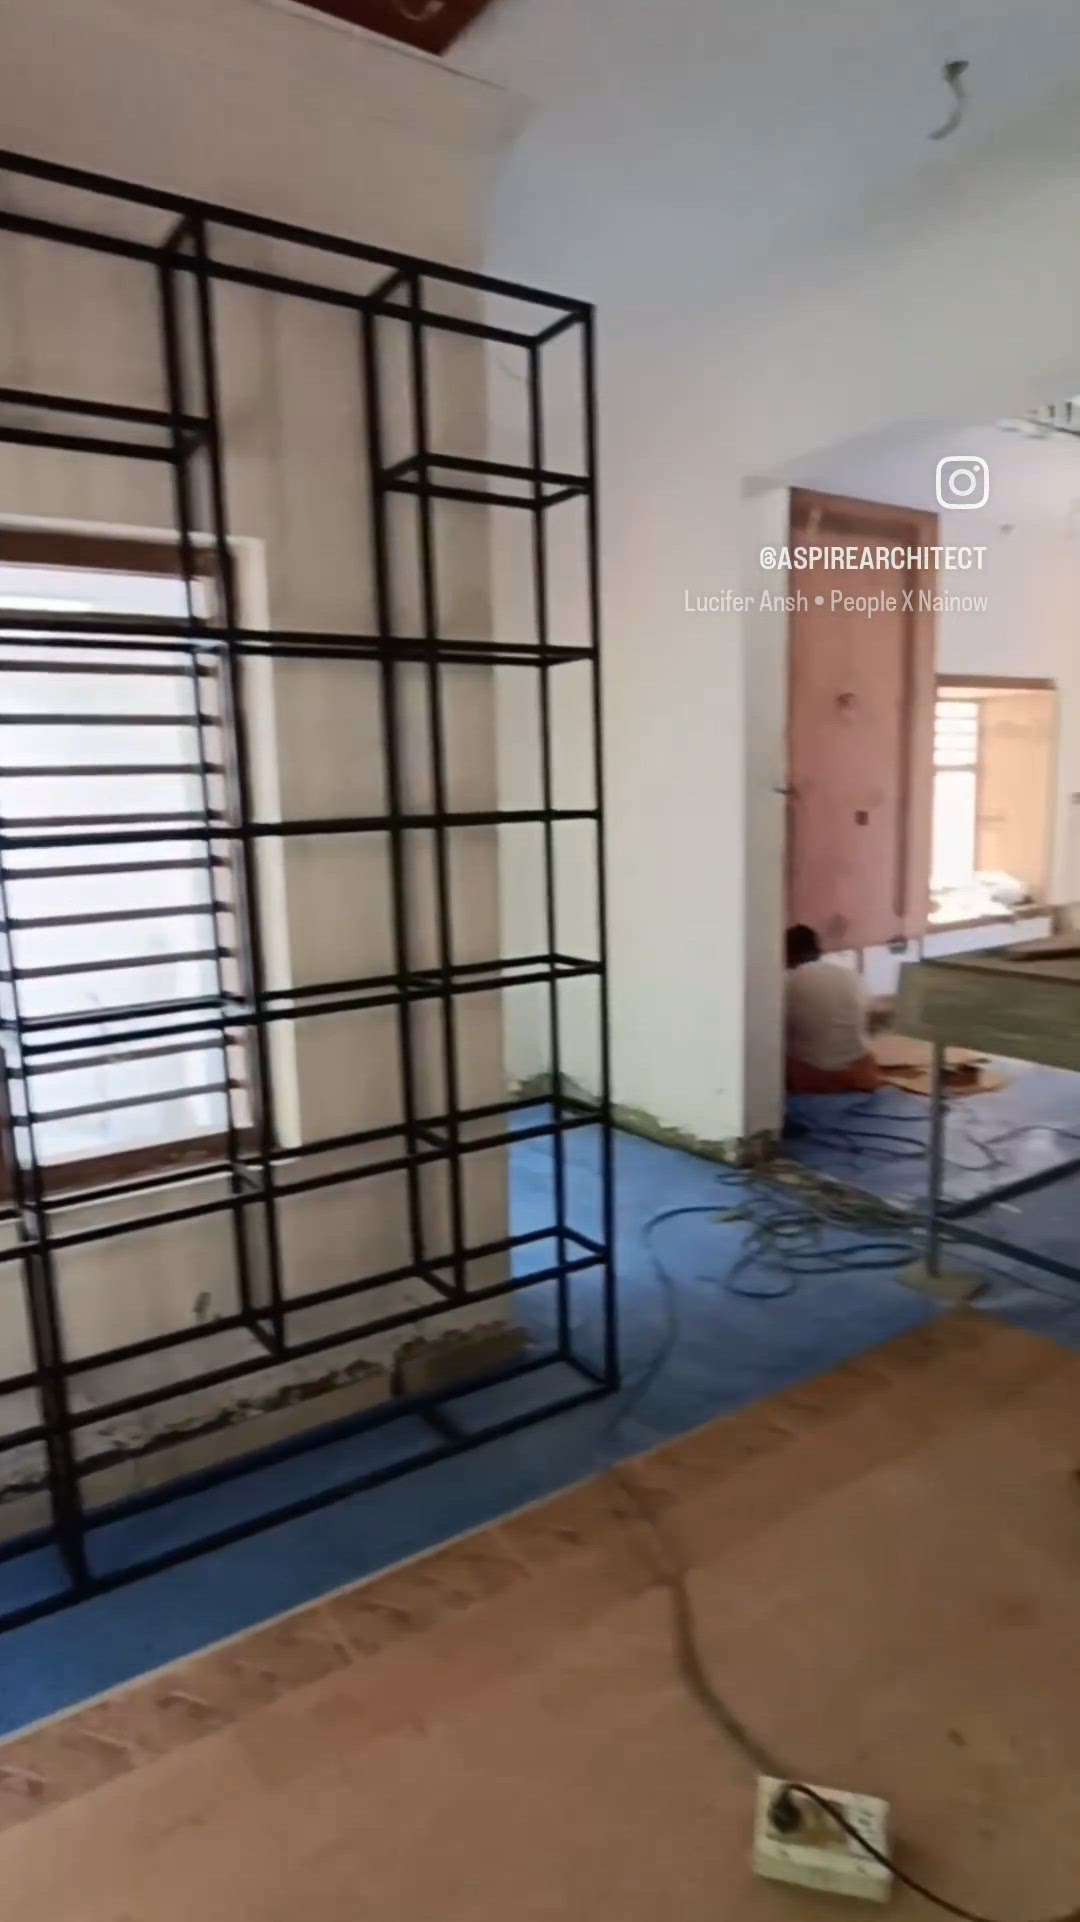 #finishingmodeon  #Thrissur  #allkeralaconstruction  #HouseRenovation  #ClosedKitchen  #LivingroomDesigns  #FlooringTiles  #aspirearchitect  # #aspirearct@gmail  #9072357706